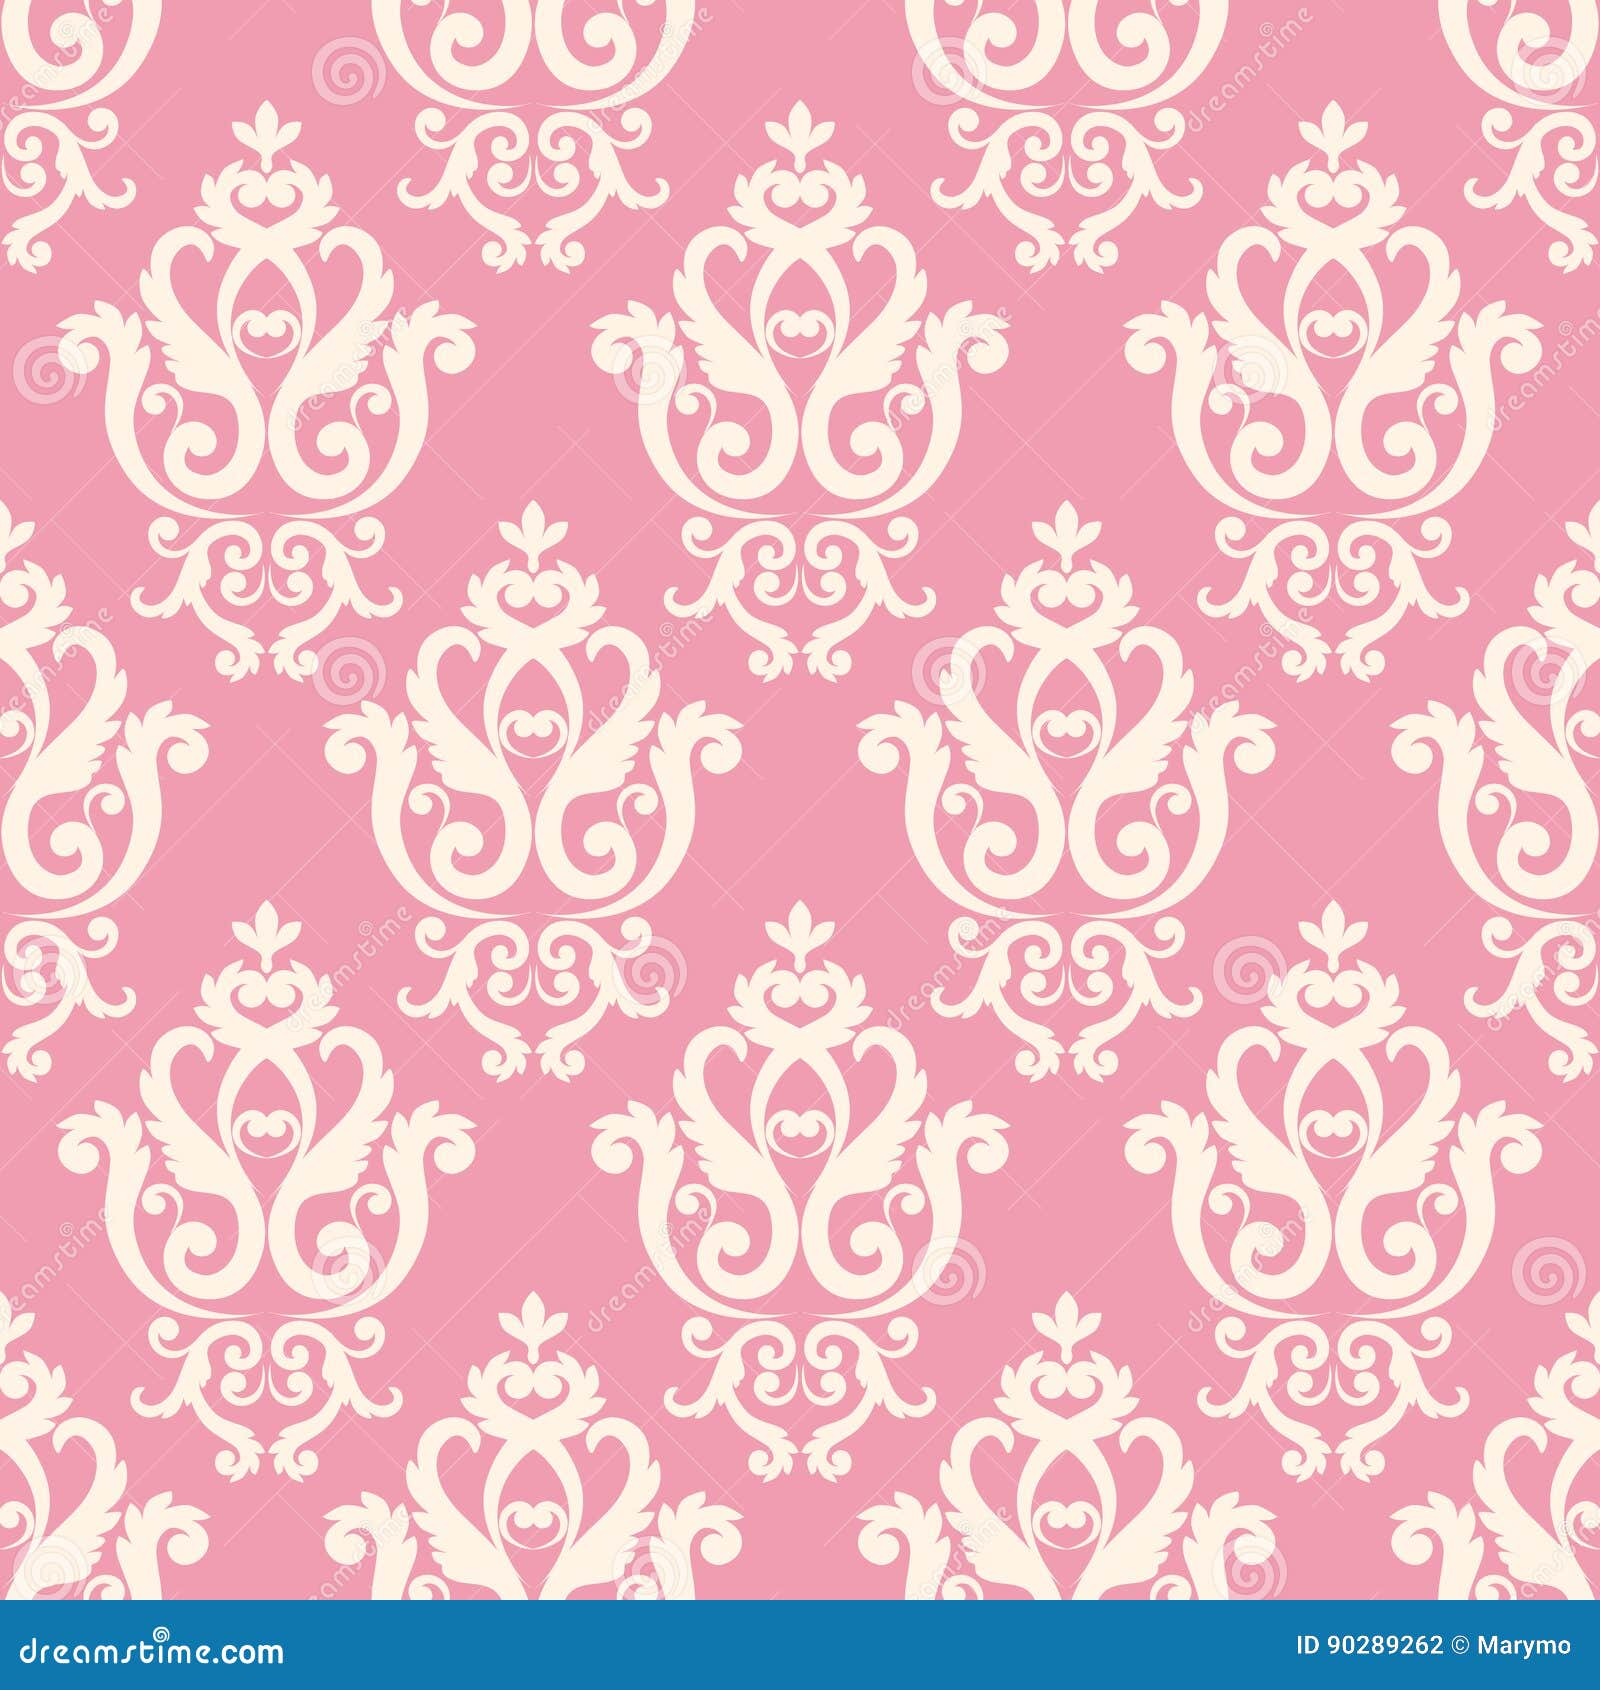 Sự kết hợp giữa màu hồng và phong cách hoàng gia mang đến cho bạn những ý tưởng tuyệt vời cho những thiết kế của riêng bạn. Hãy cùng nhìn ngắm những họa tiết hoàng gia đầy đẳng cấp và ấn tượng này ngay bây giờ!